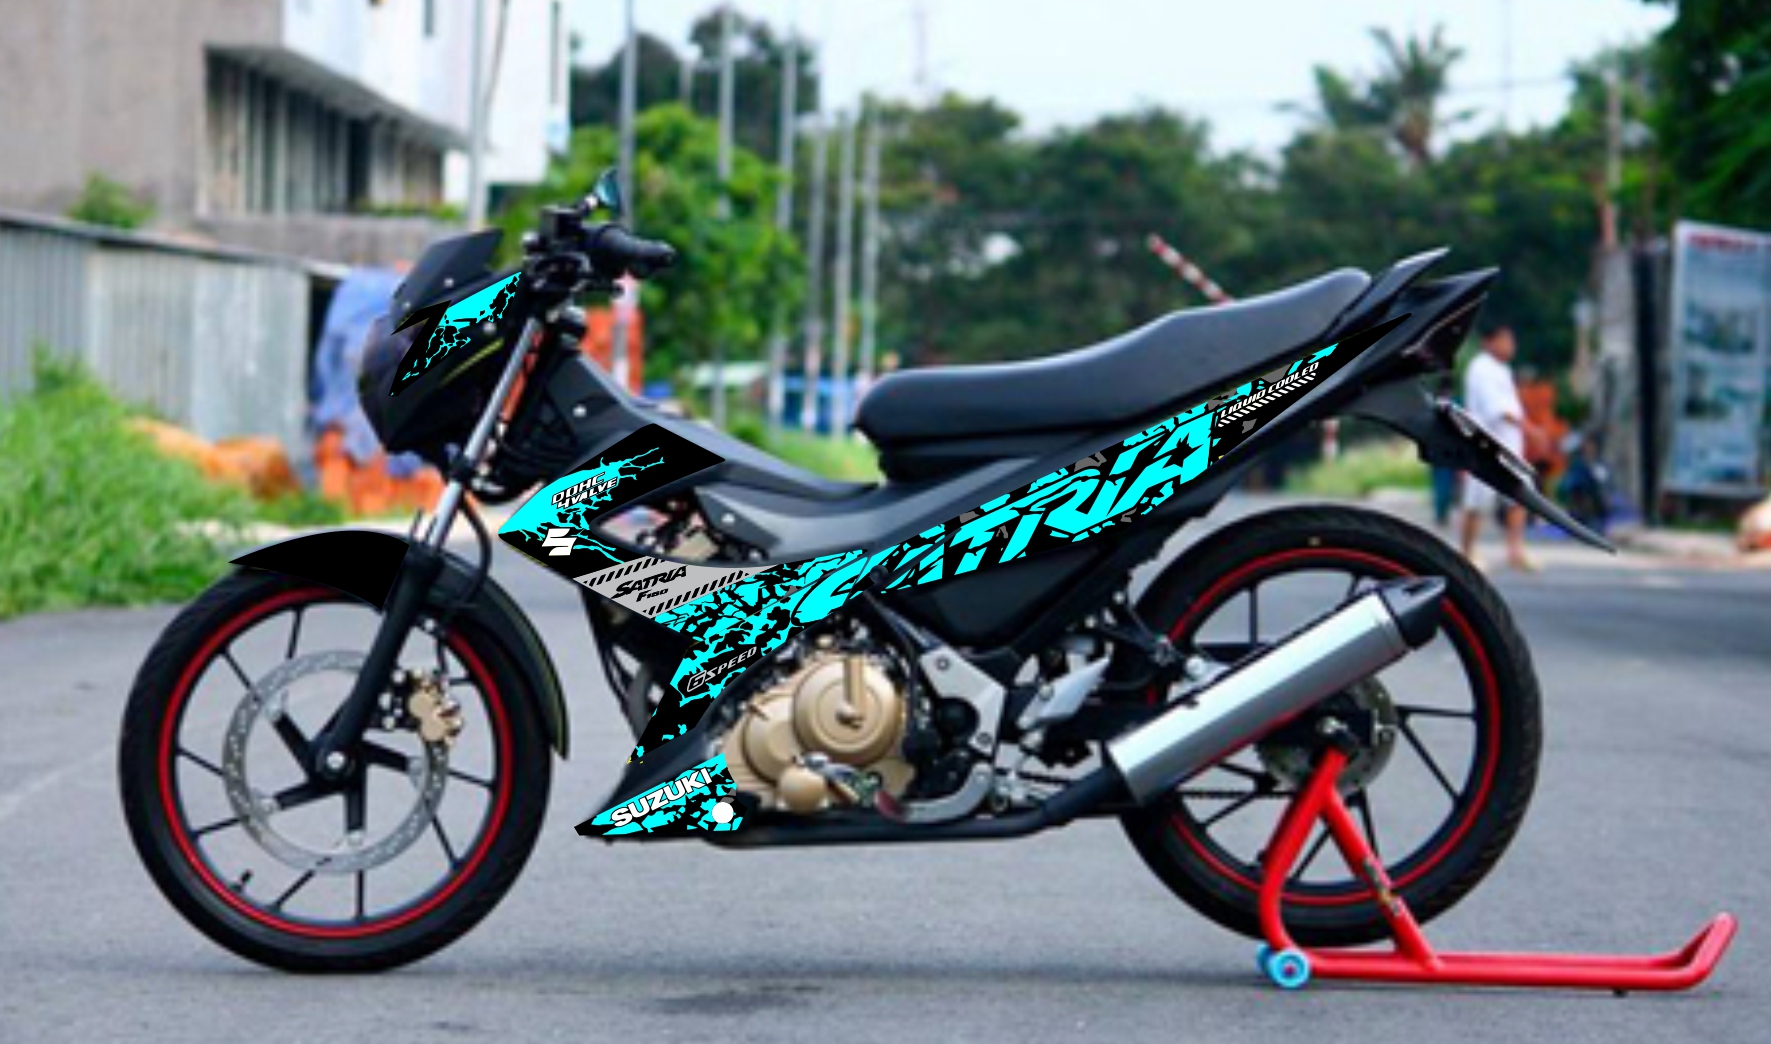 STRIPING STICKER MOTOR SATRIA FU FL 150 2014 2015 FULL VARIASI WARNA KEREN MURAH BAHAN GRAFTAC TAHAN SAMPAI 4 5 TAHUN KE DEPAN Lazada Indonesia